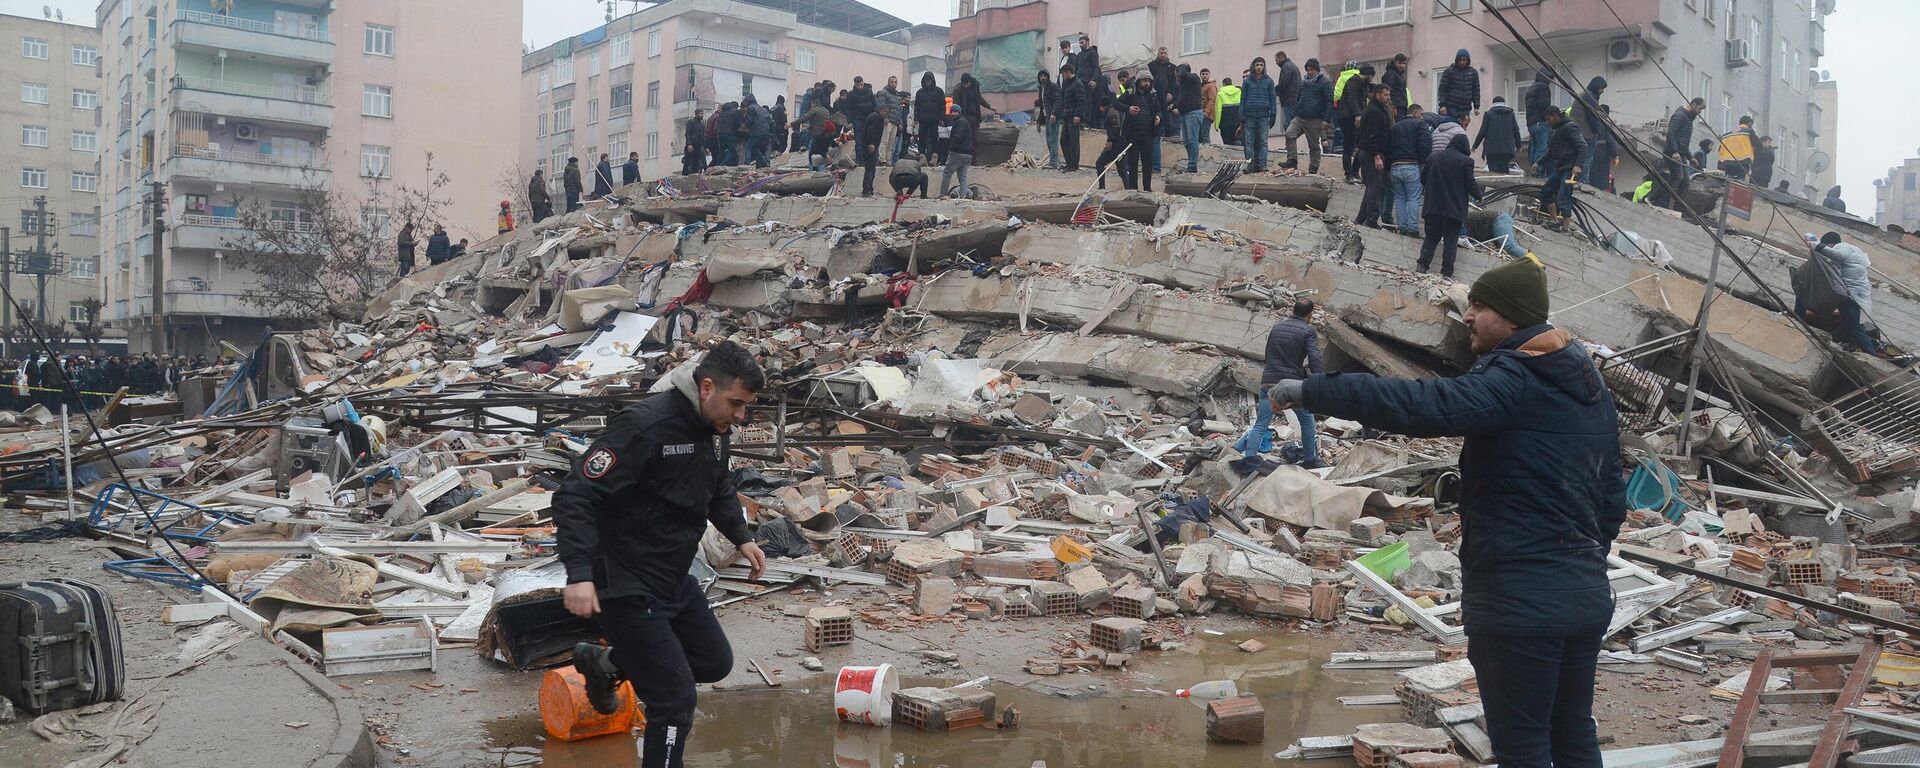 Pessoas buscam sobreviventes debaixo dos escombros após a queda de prédio causado por terremoto na Turquia e na Síria, no sudeste da Turquia, 6 de fevereiro de 2023 - Sputnik Brasil, 1920, 20.02.2023